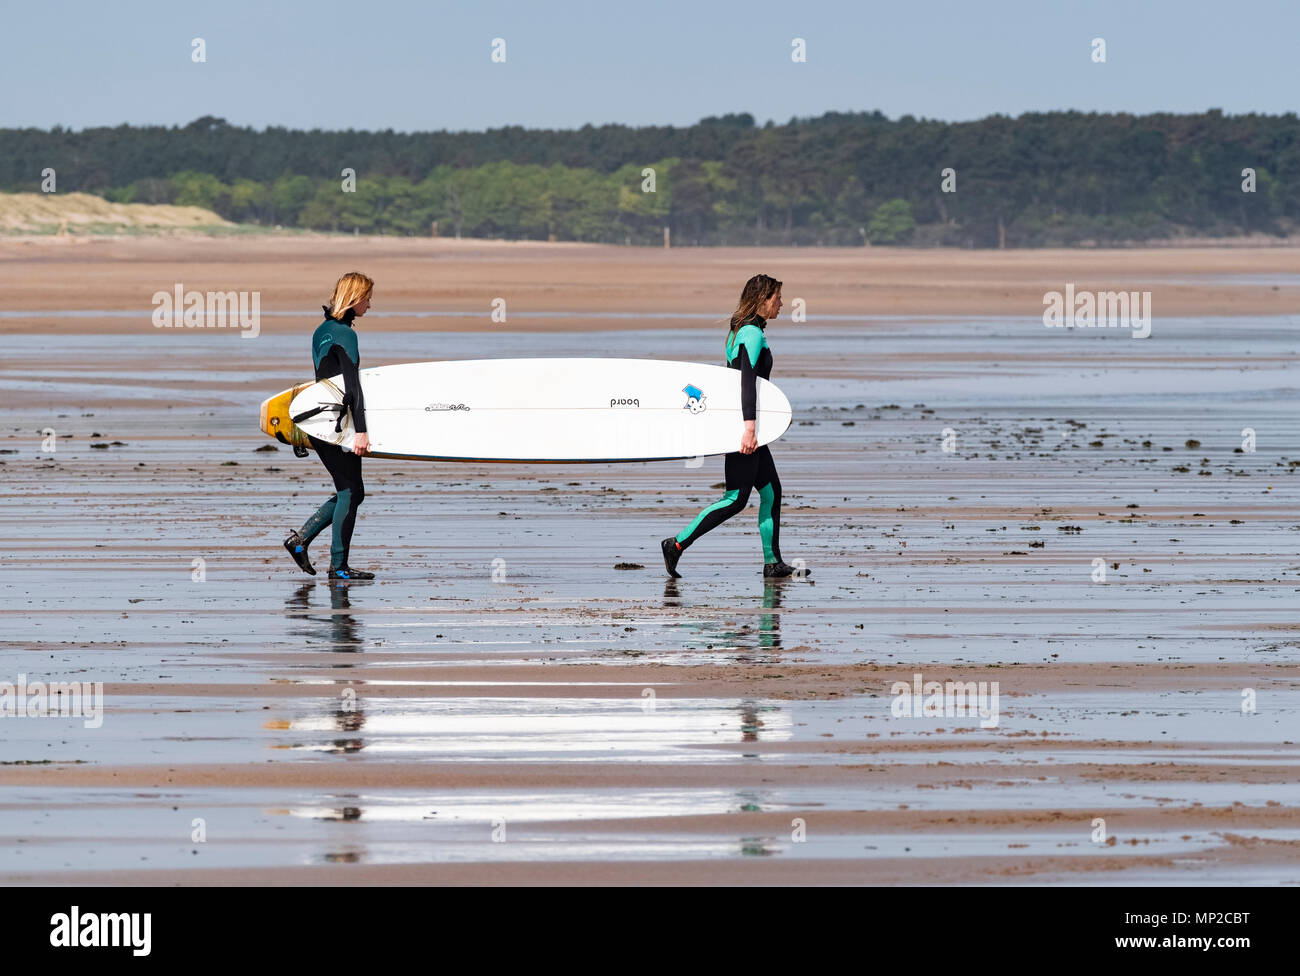 Deux femmes portent des planches de surf de mer à Belhaven Beach, East Lothian, Ecosse, Royaume-Uni Banque D'Images